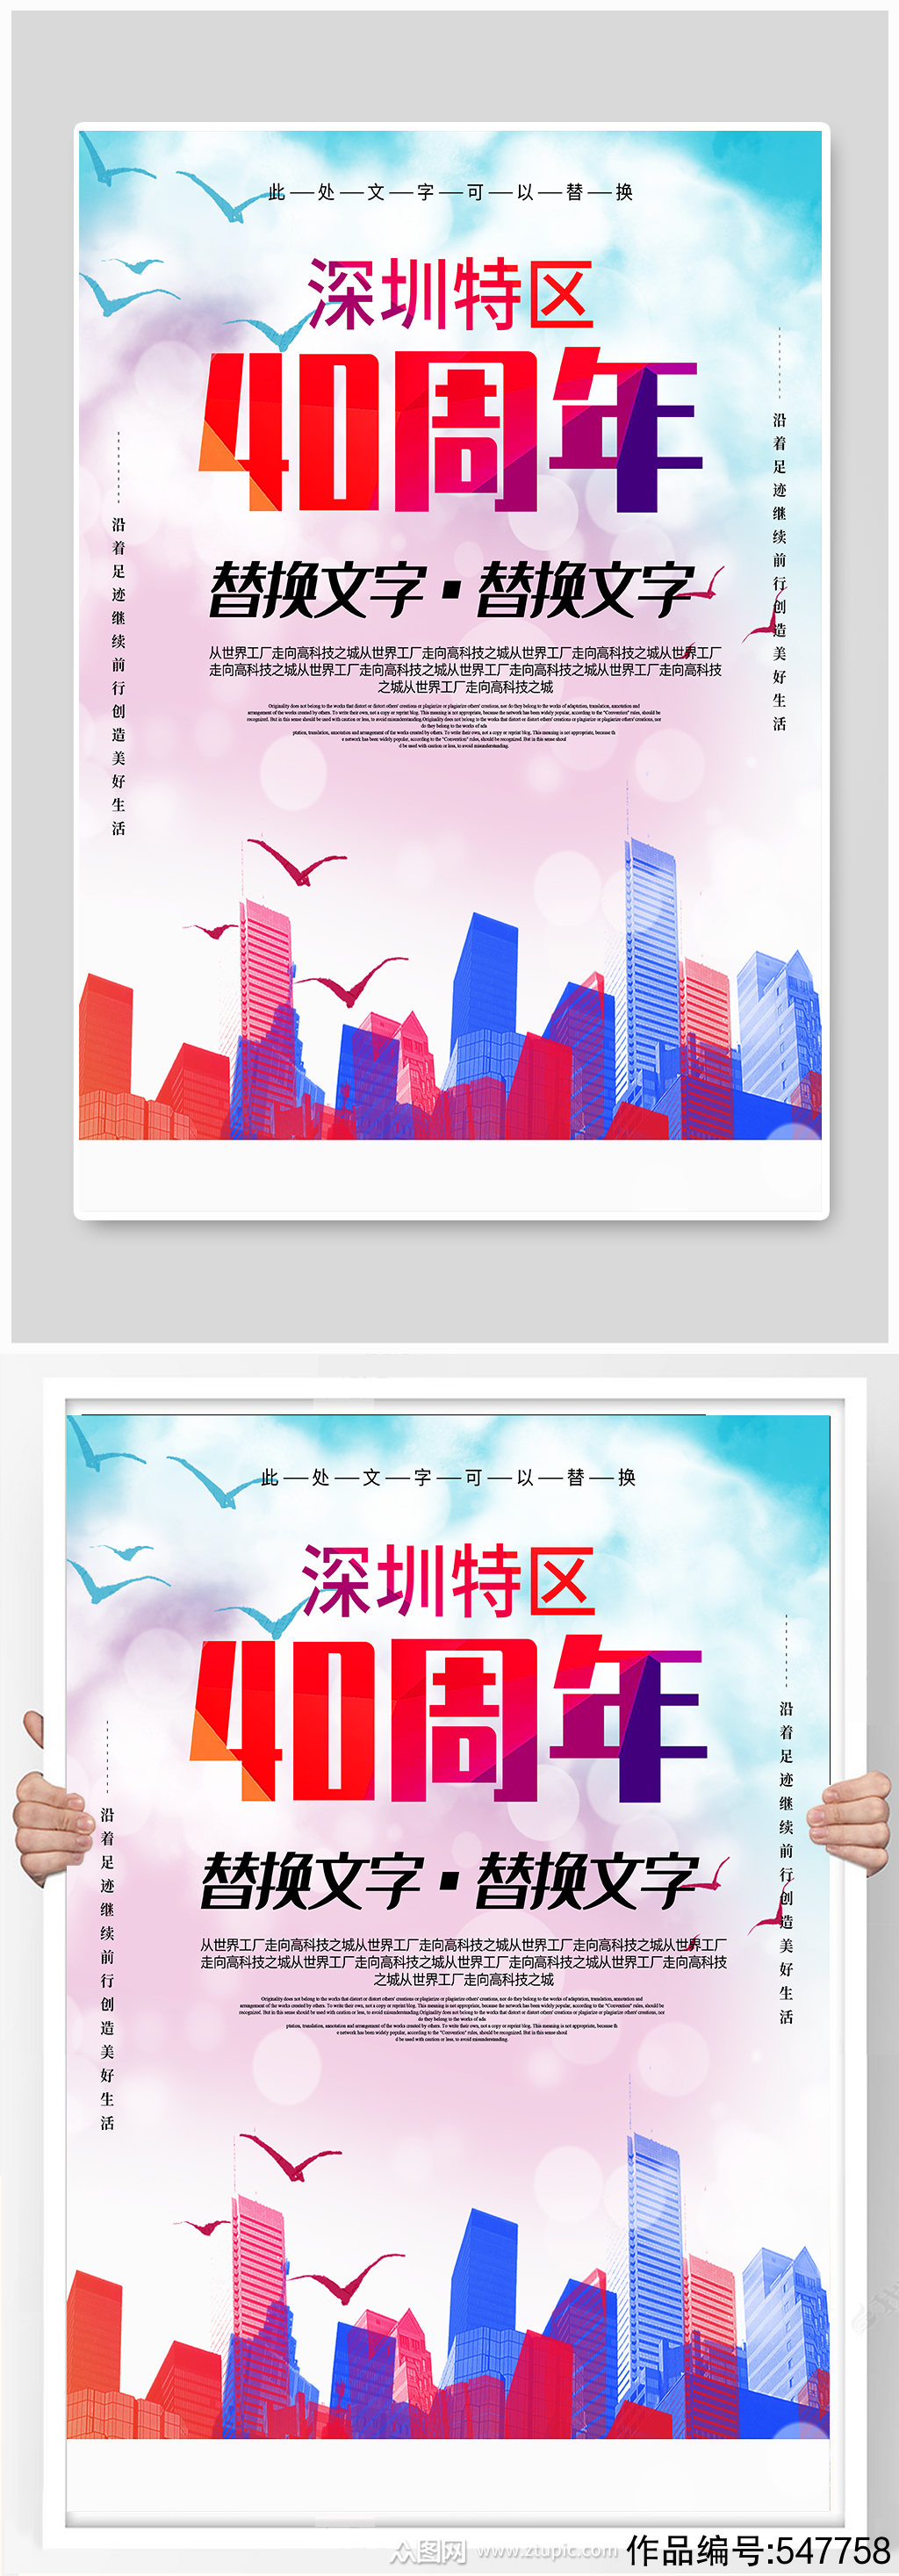 深圳特区40周年宣传海报